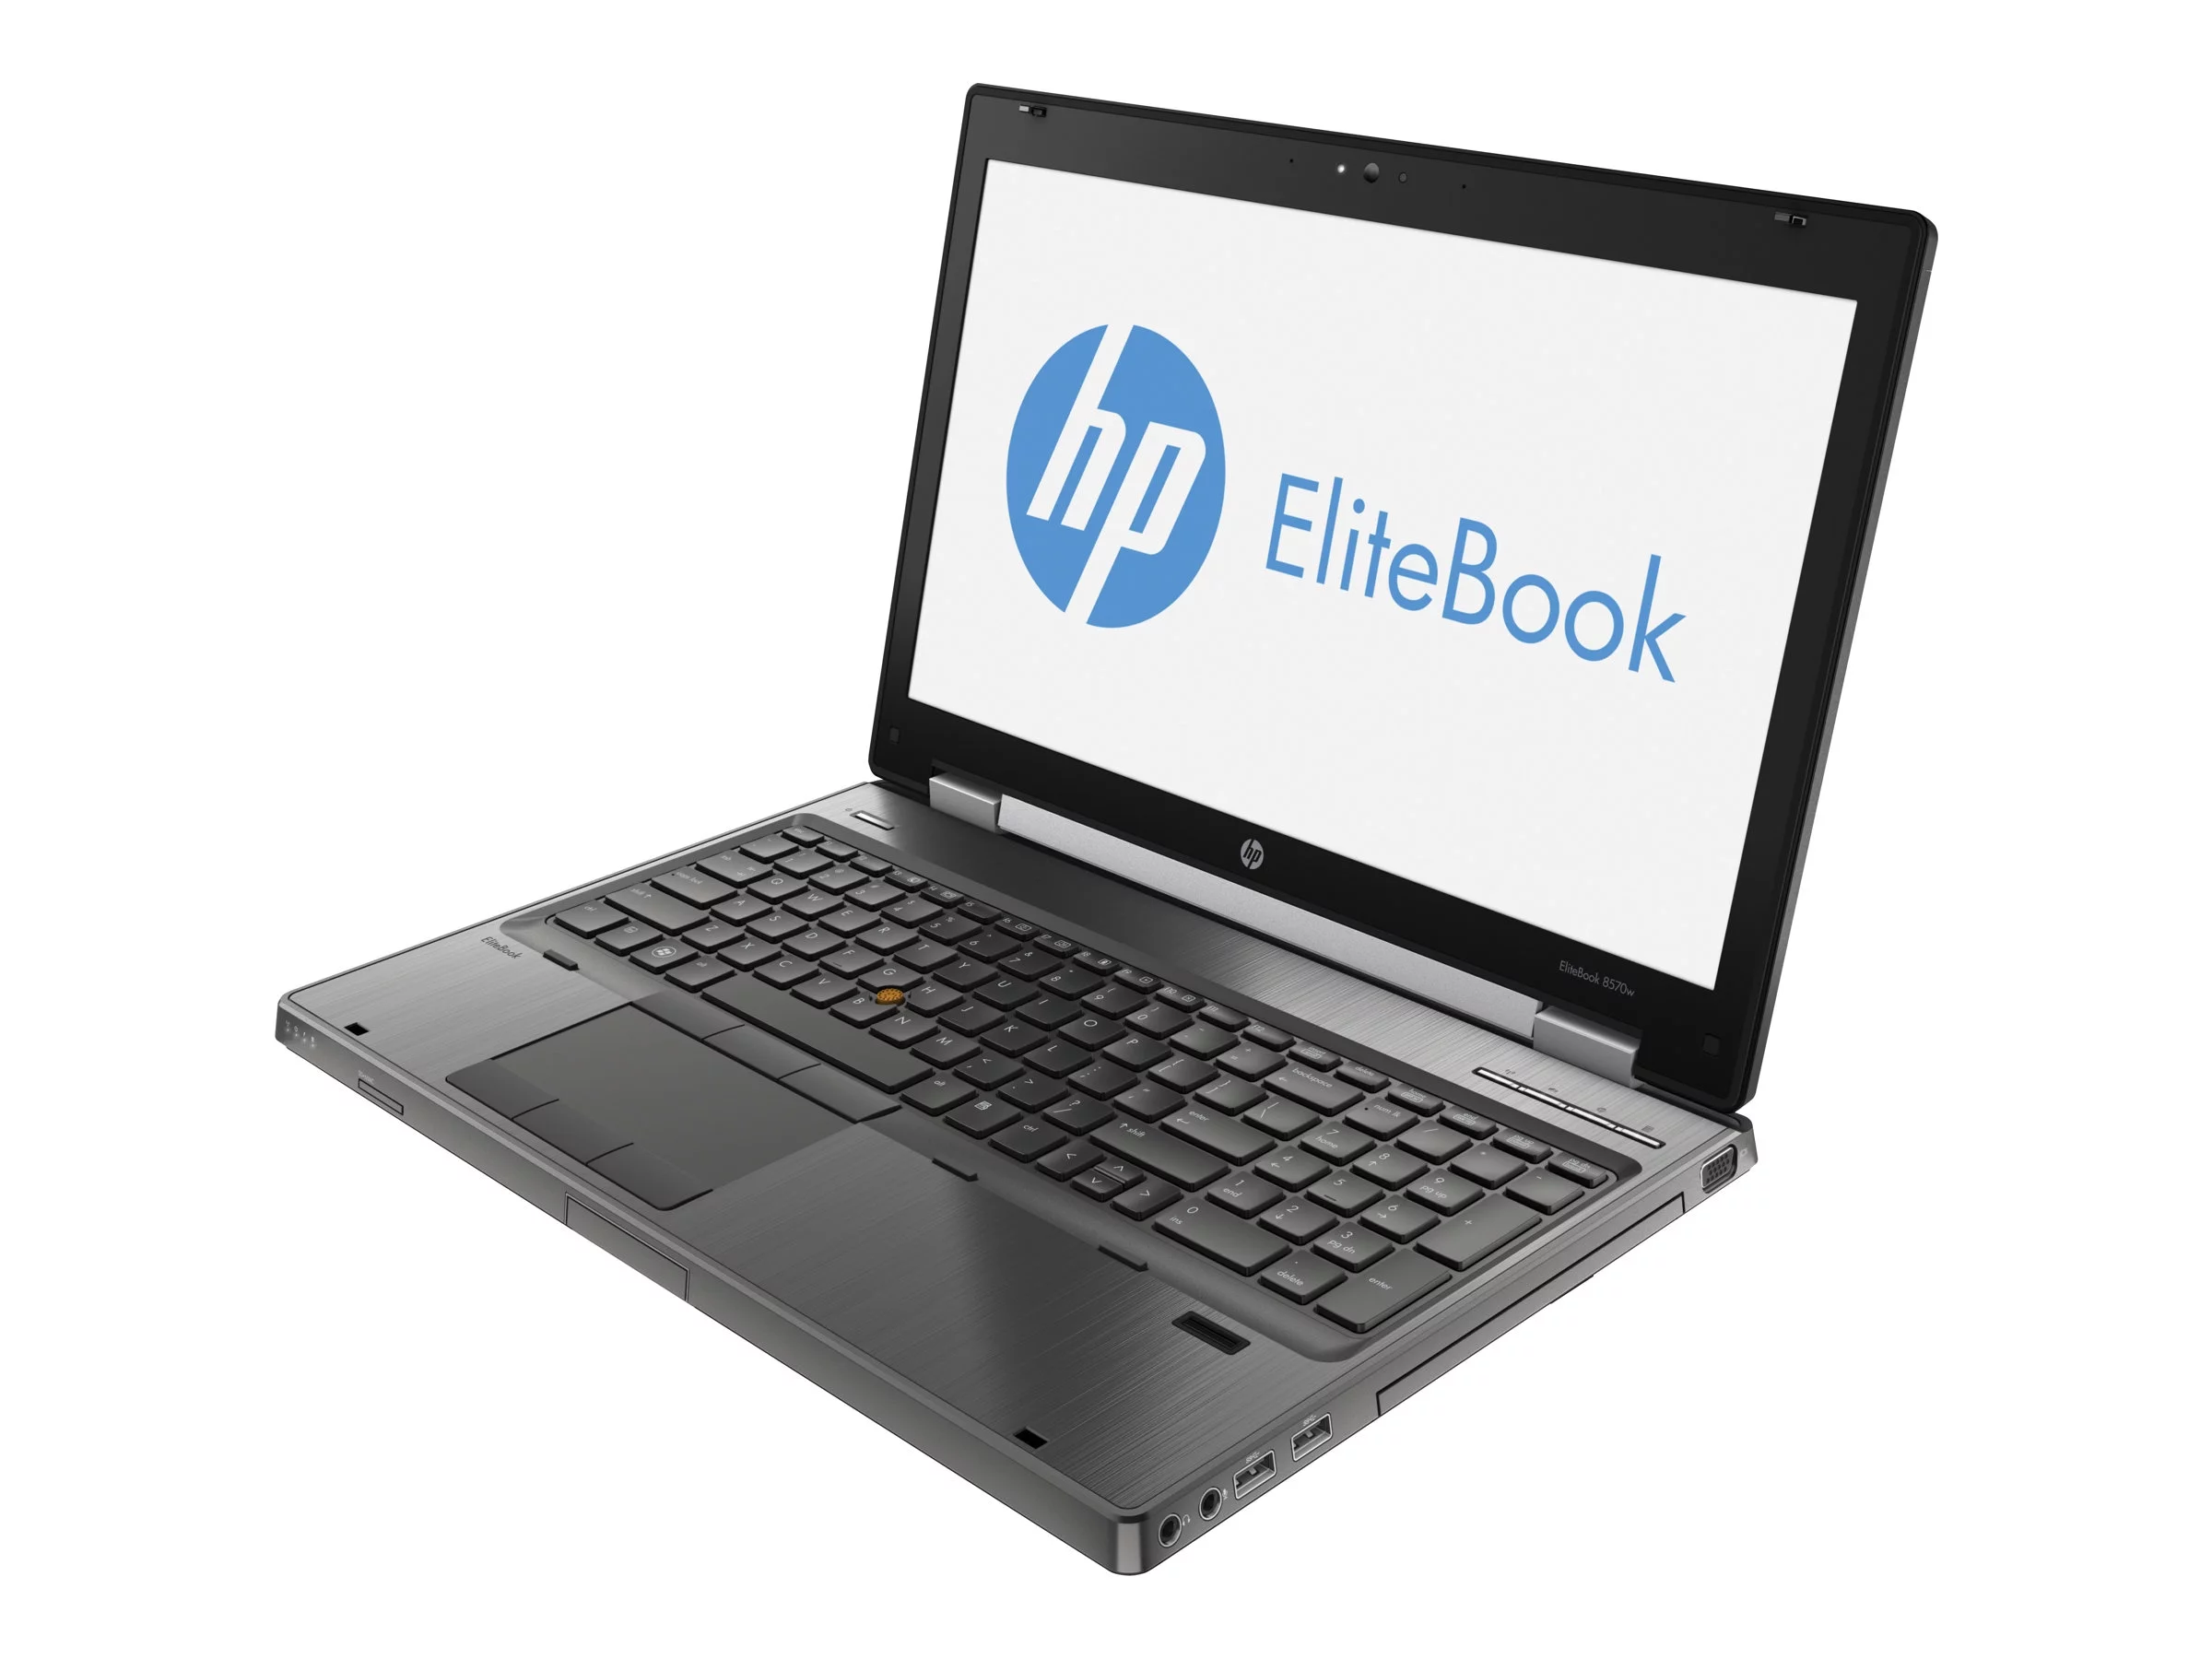 EliteBook 8570w Mobile Workstation